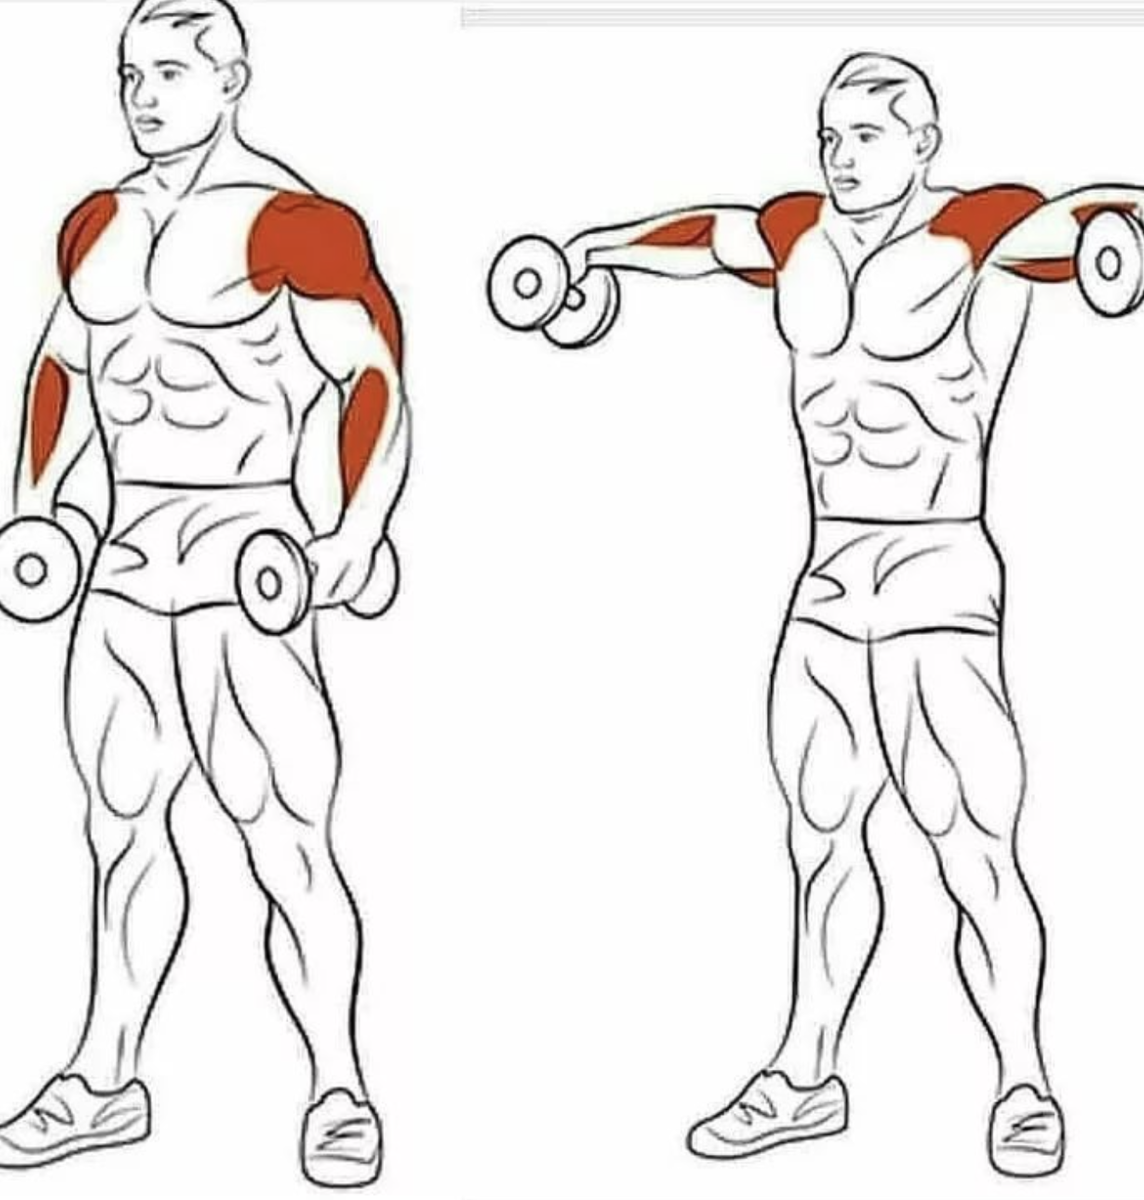 Гантели плечи дельты. Упражнения на дельтовидные мышцы с гантелями. Упражнения для прокачки плеч. Упражнения на дельтовидные мышцы в тренажерном зале. Дельтовидная мышца плеча упражнения с гантелями.